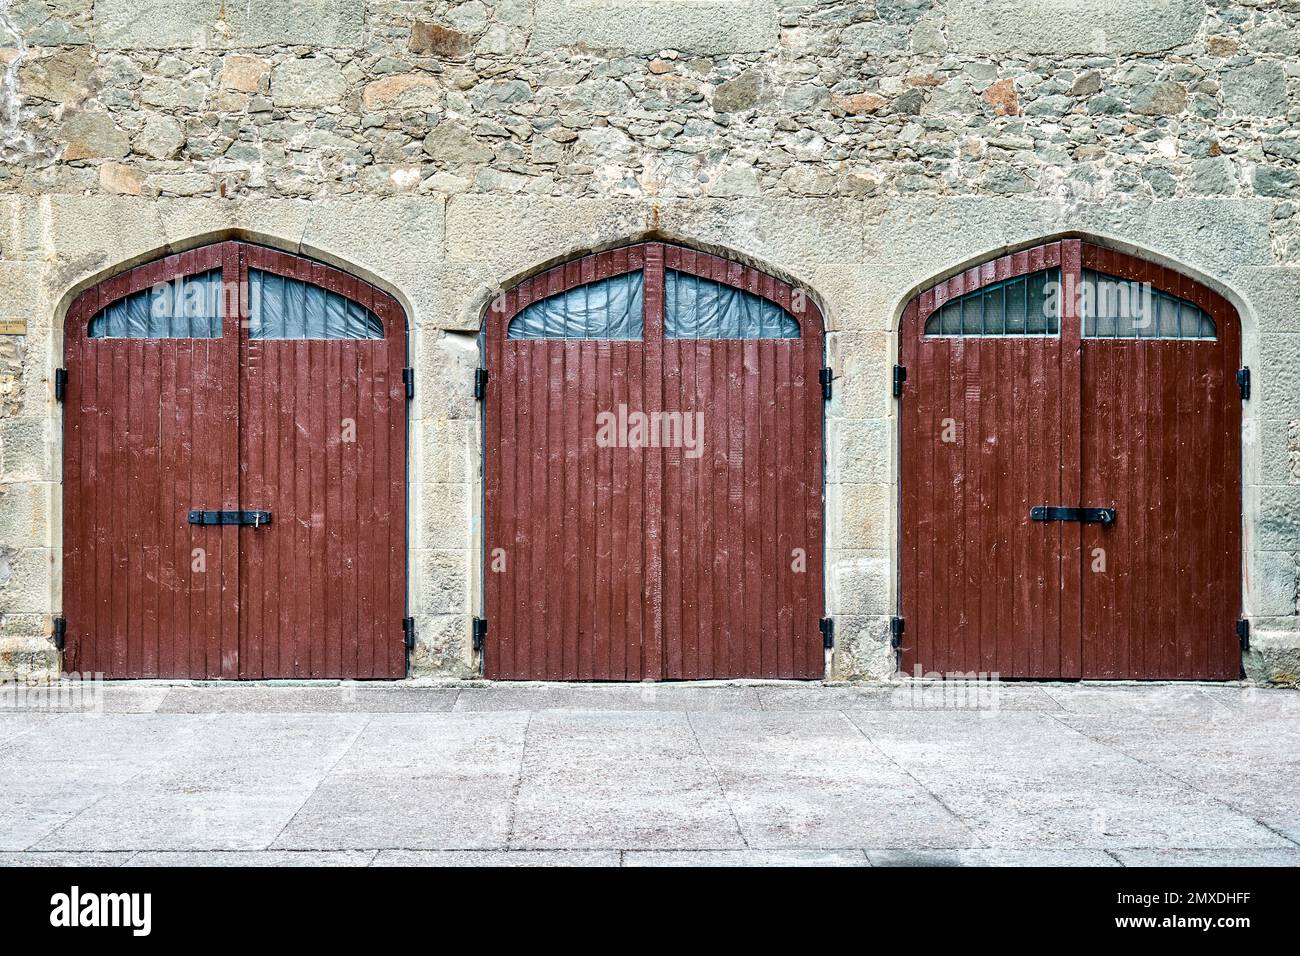 Des portes en bois marron sur un mur entouré de pierres de conception médiévale cachent des choses mystérieuses des visiteurs d'arrivée. Extérieur de la place médiévale Banque D'Images